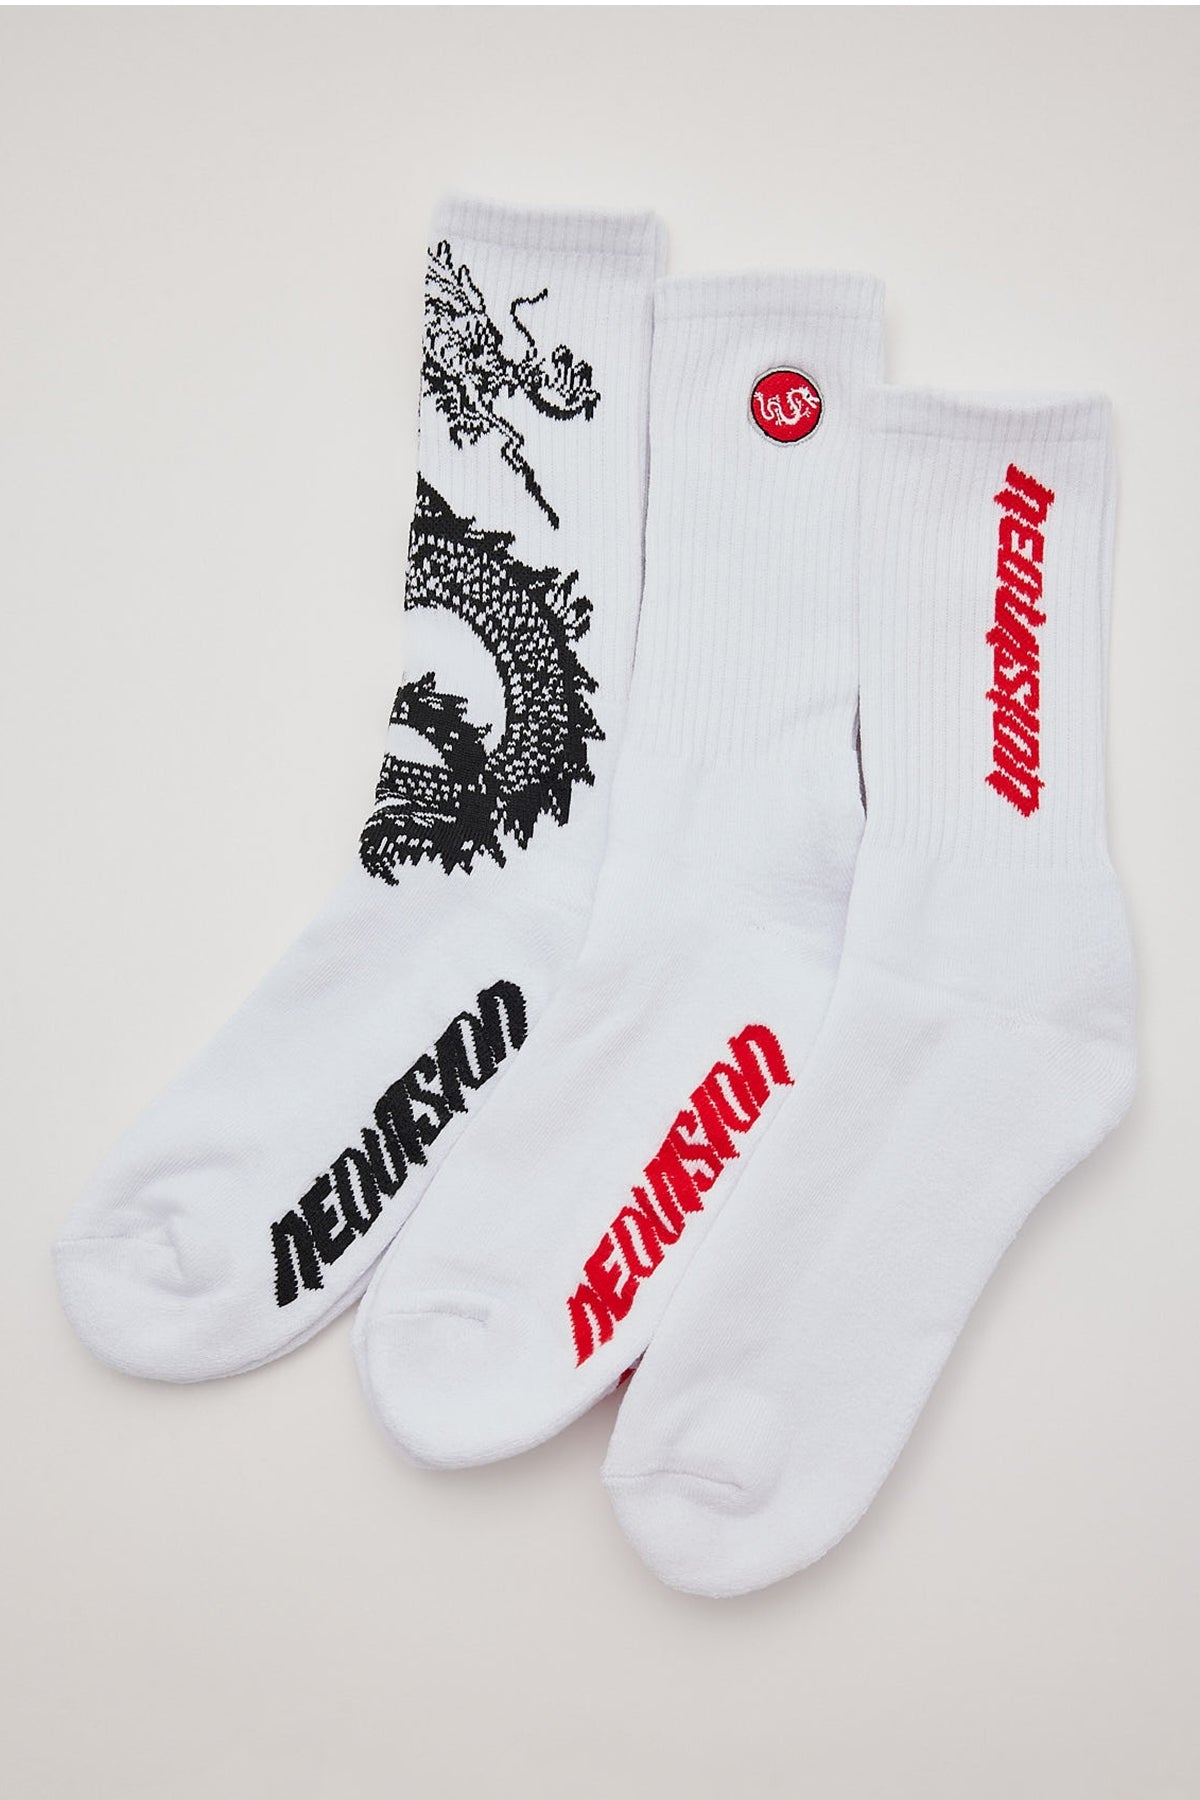 Neovision Warrior Sock 3 Pack White